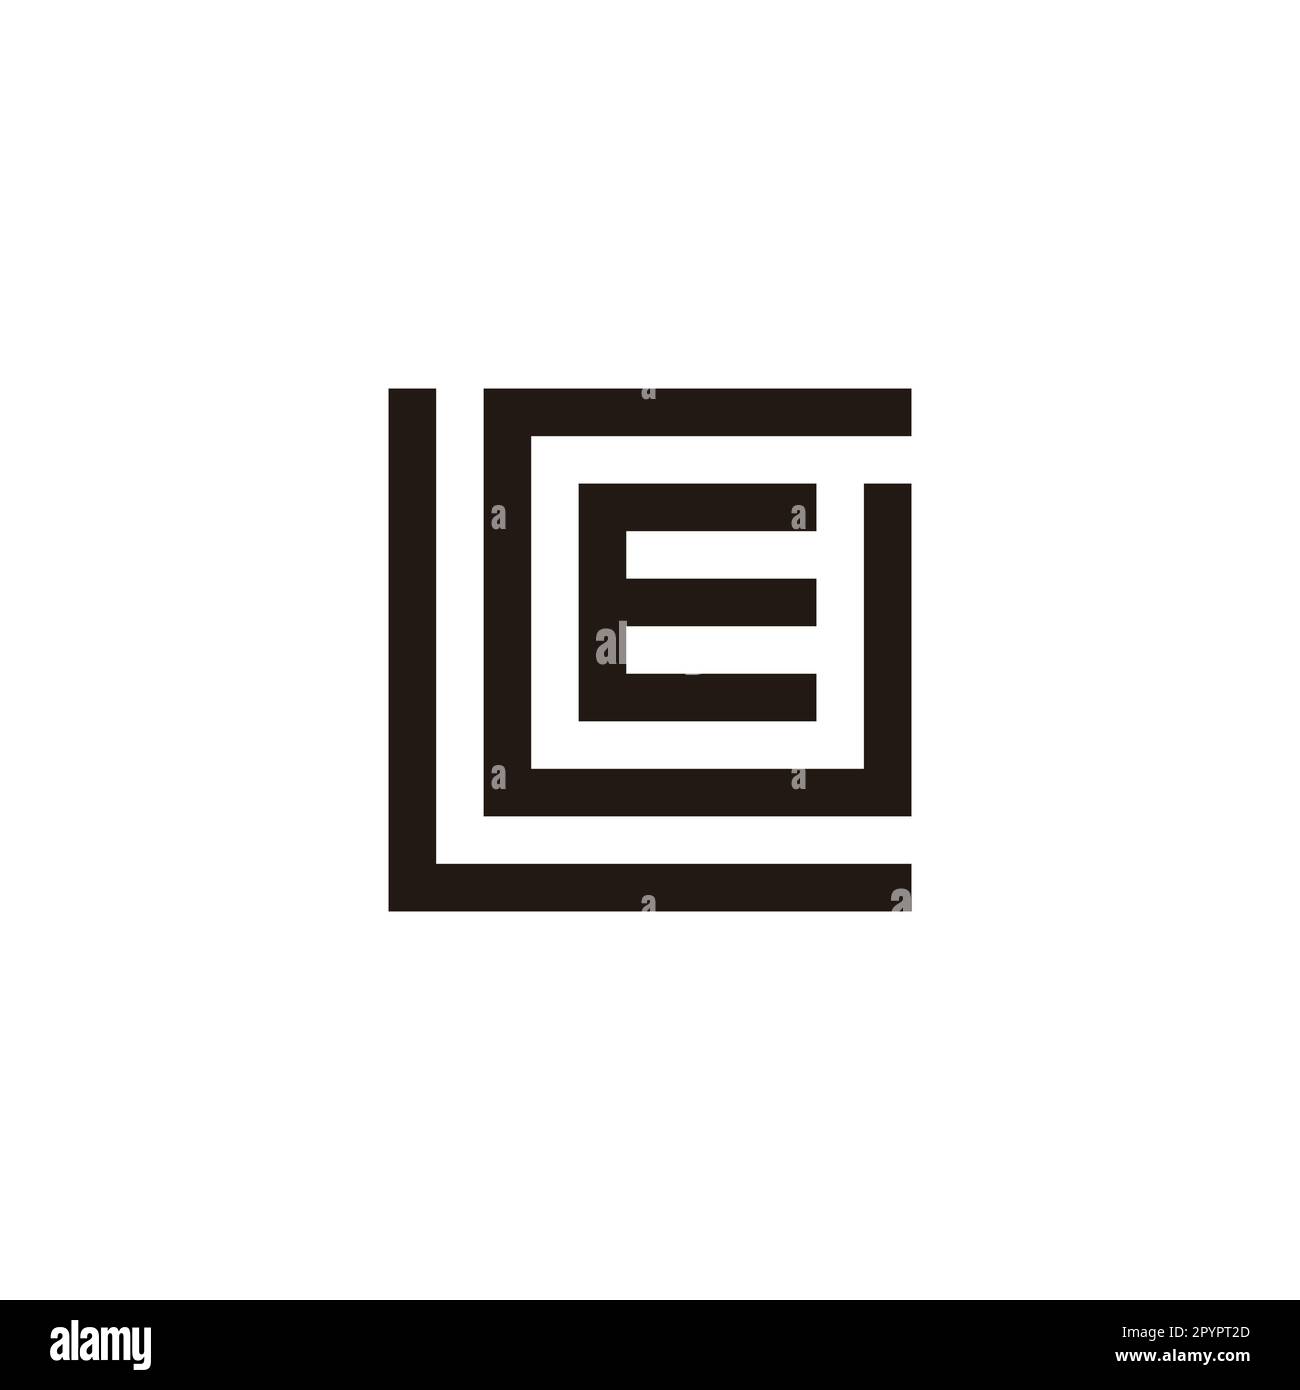 Monogram Tiles Square 70 S00 - Accessories